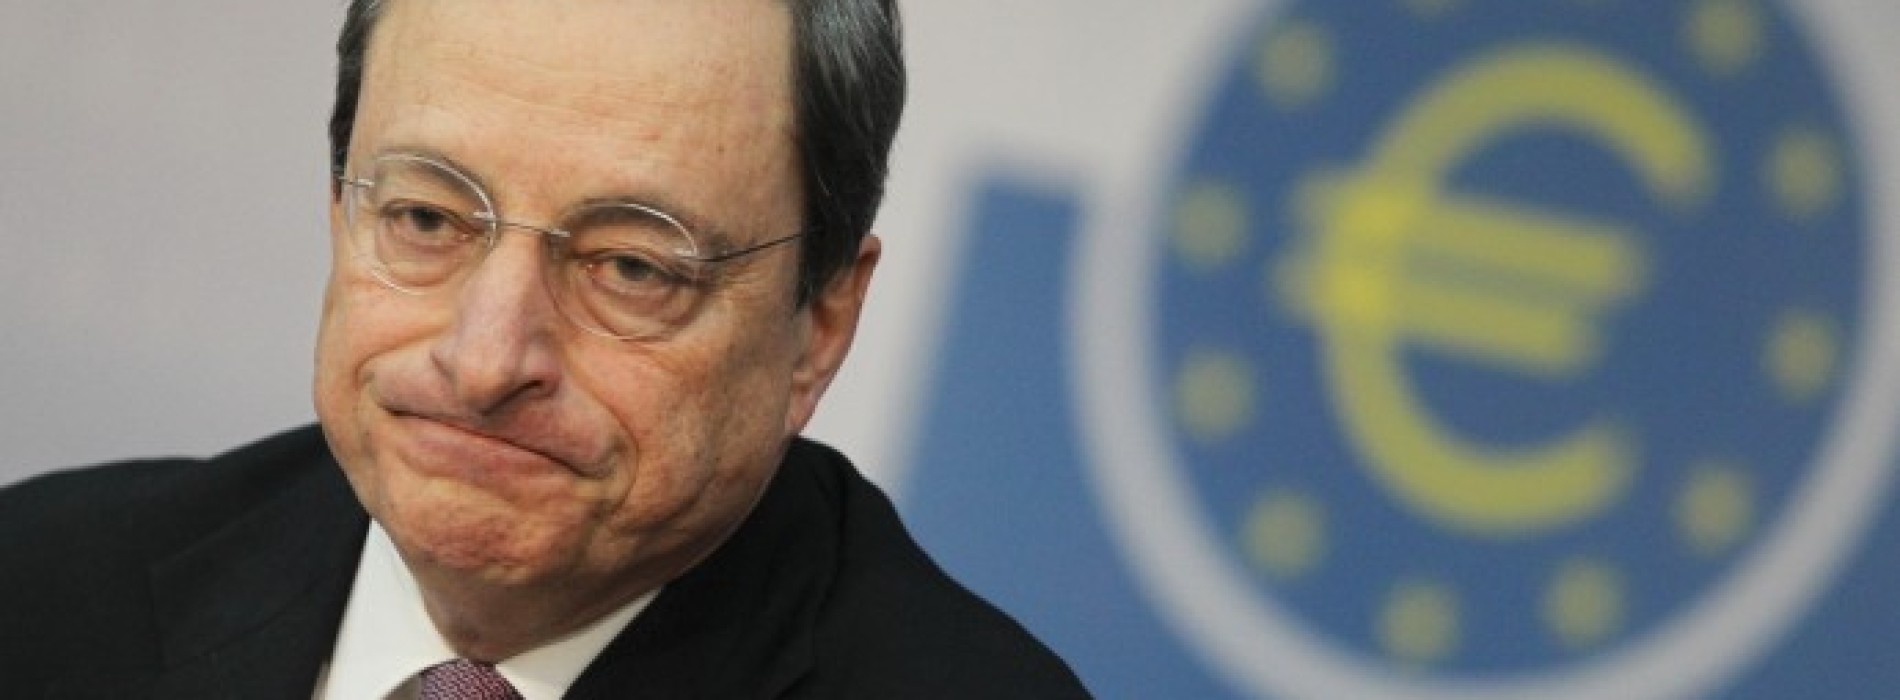 Poranny komentarz giełdowy – Efekt Draghiego